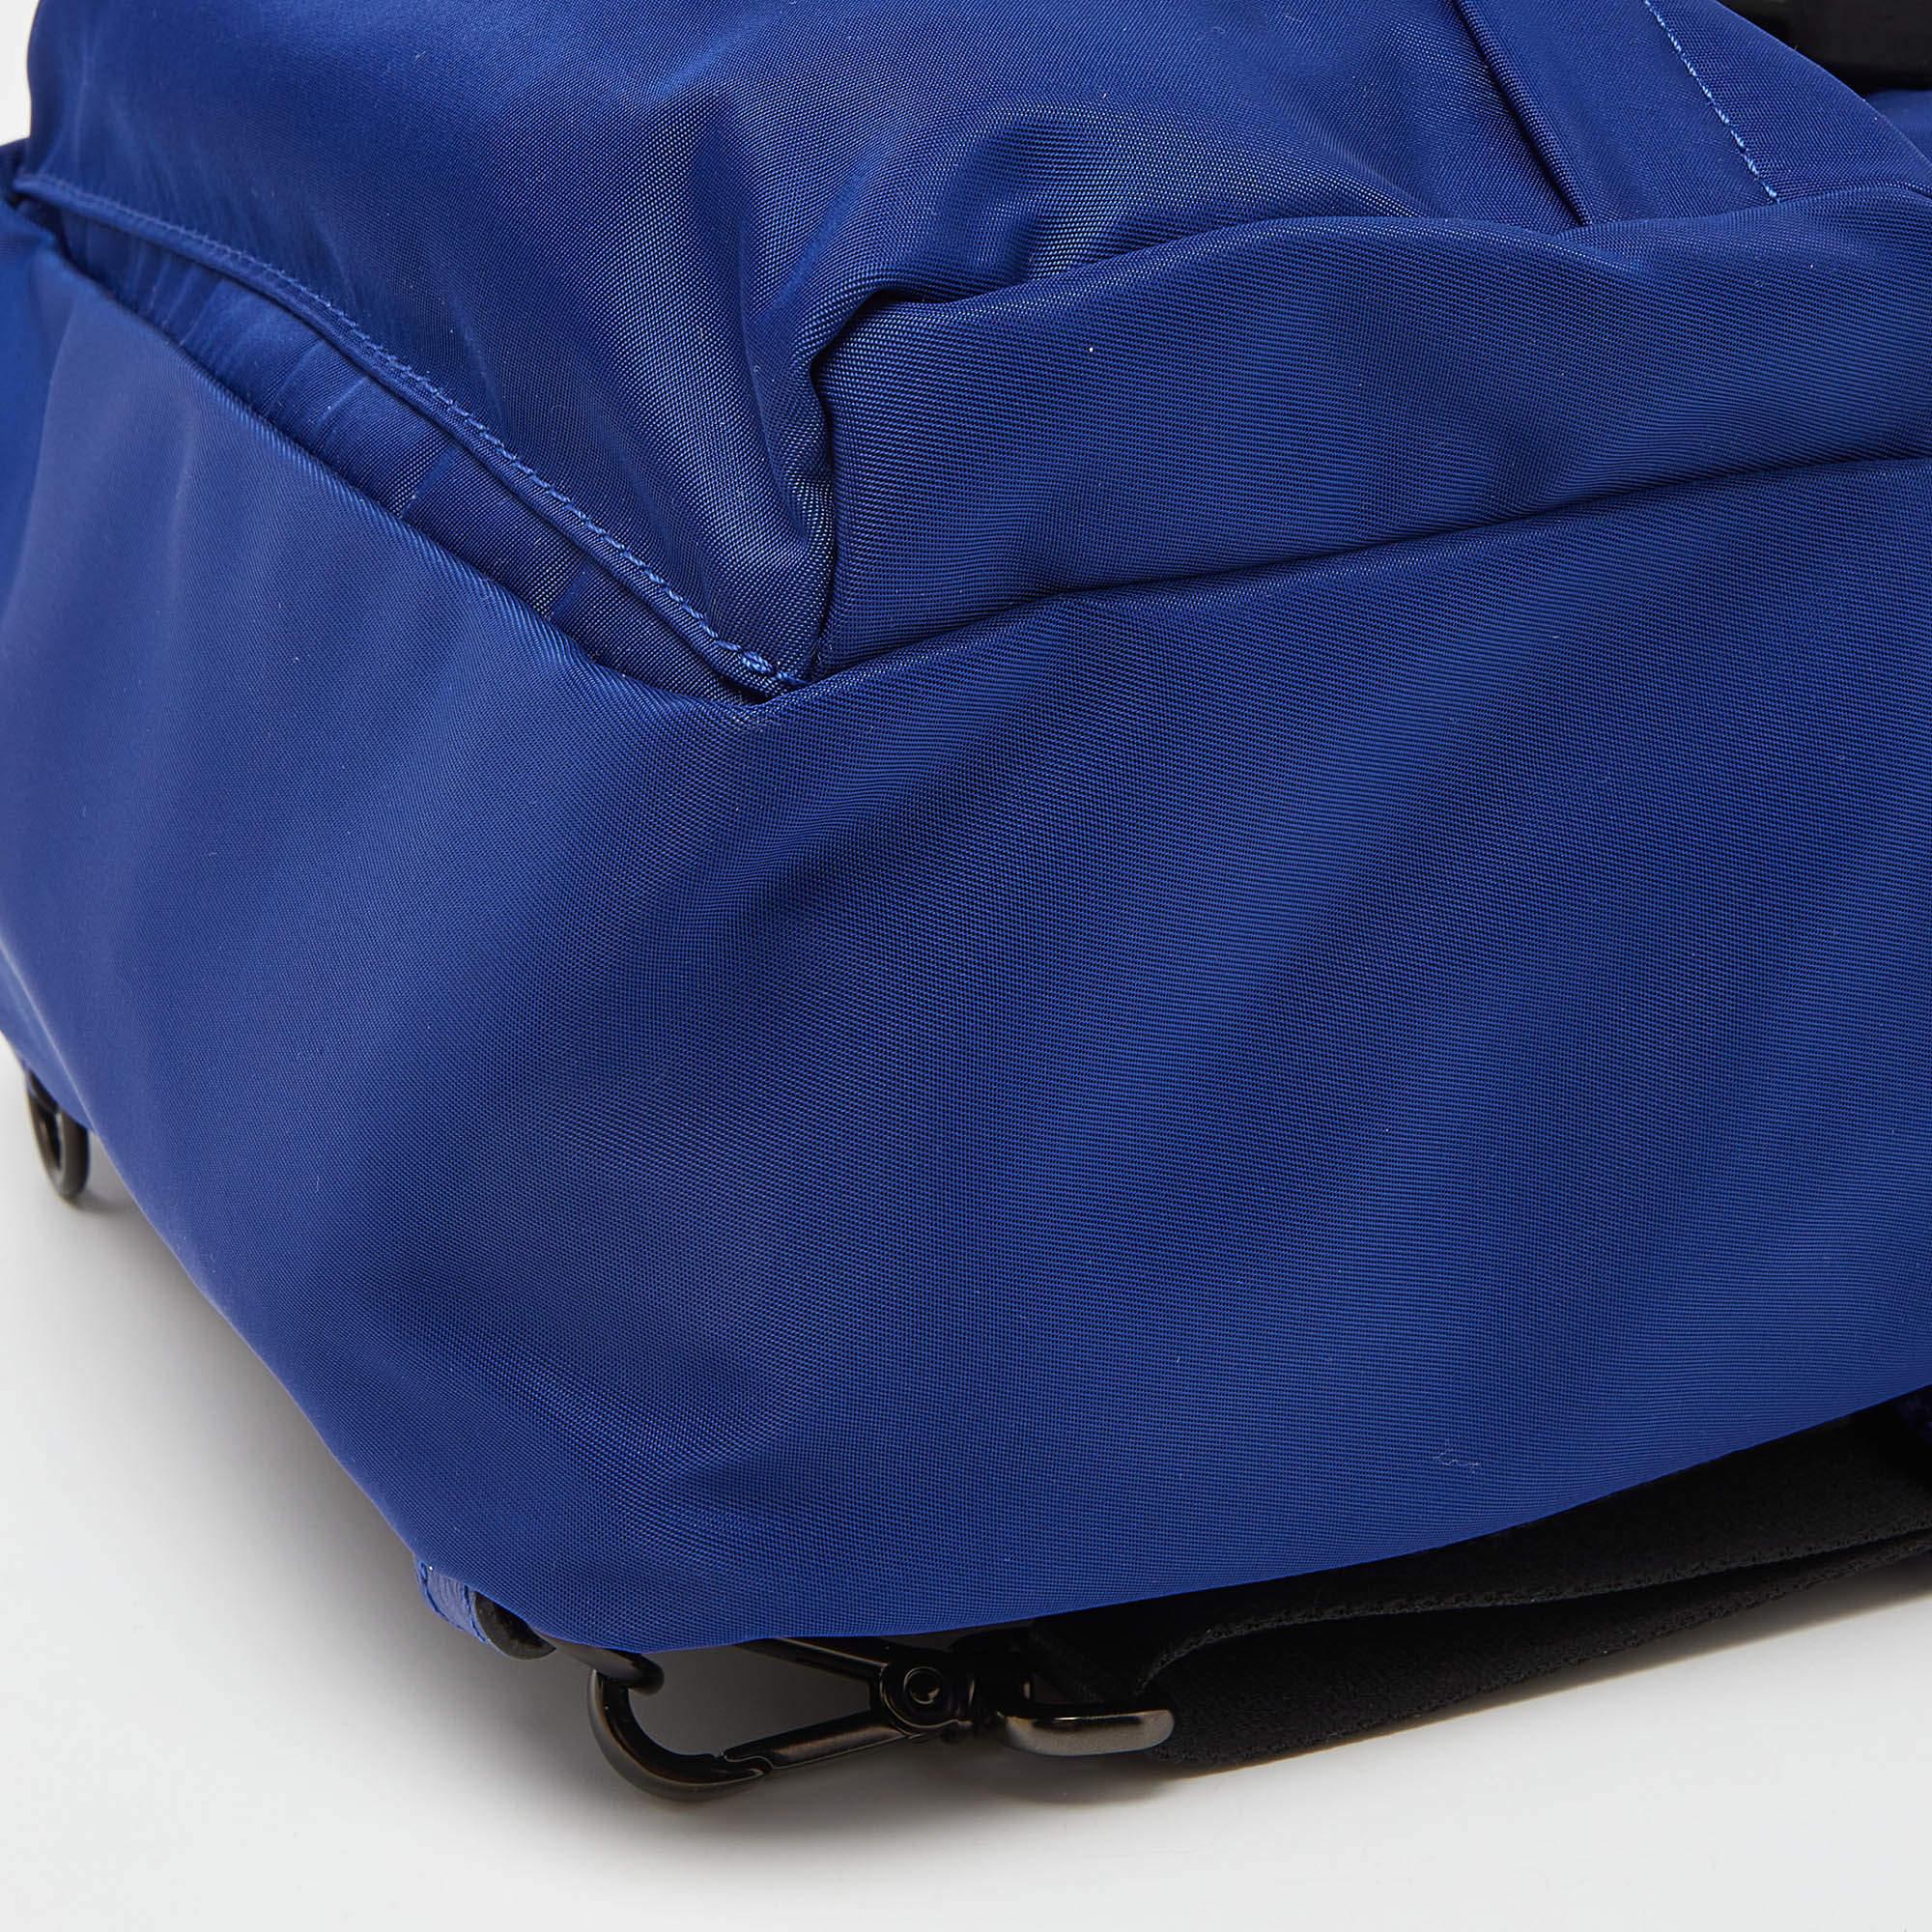 Fendi Blue/Black Nylon Small Fendiness Sling Backpack For Sale 3